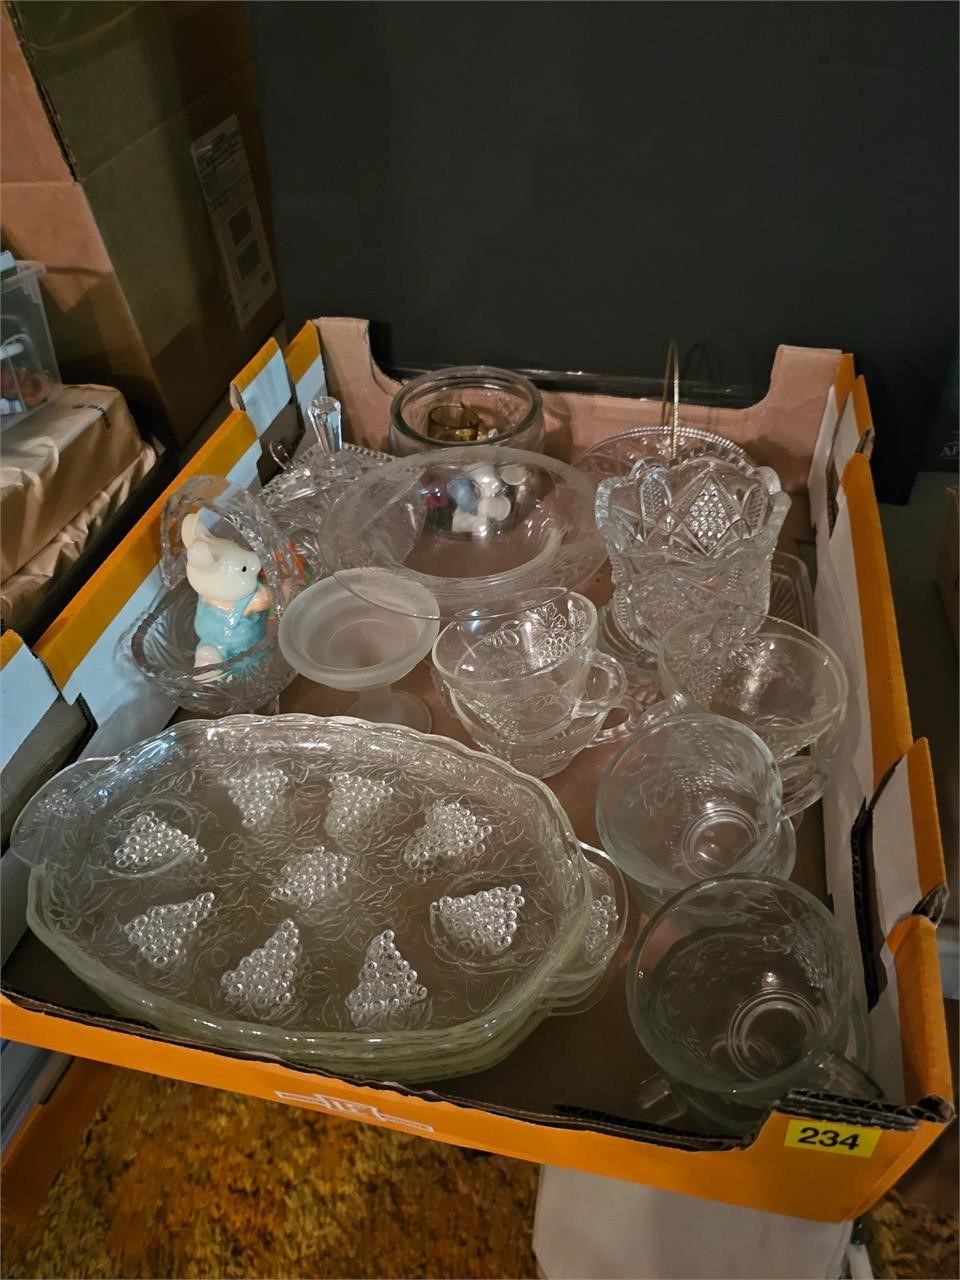 Crystal plates, platters, tea cups